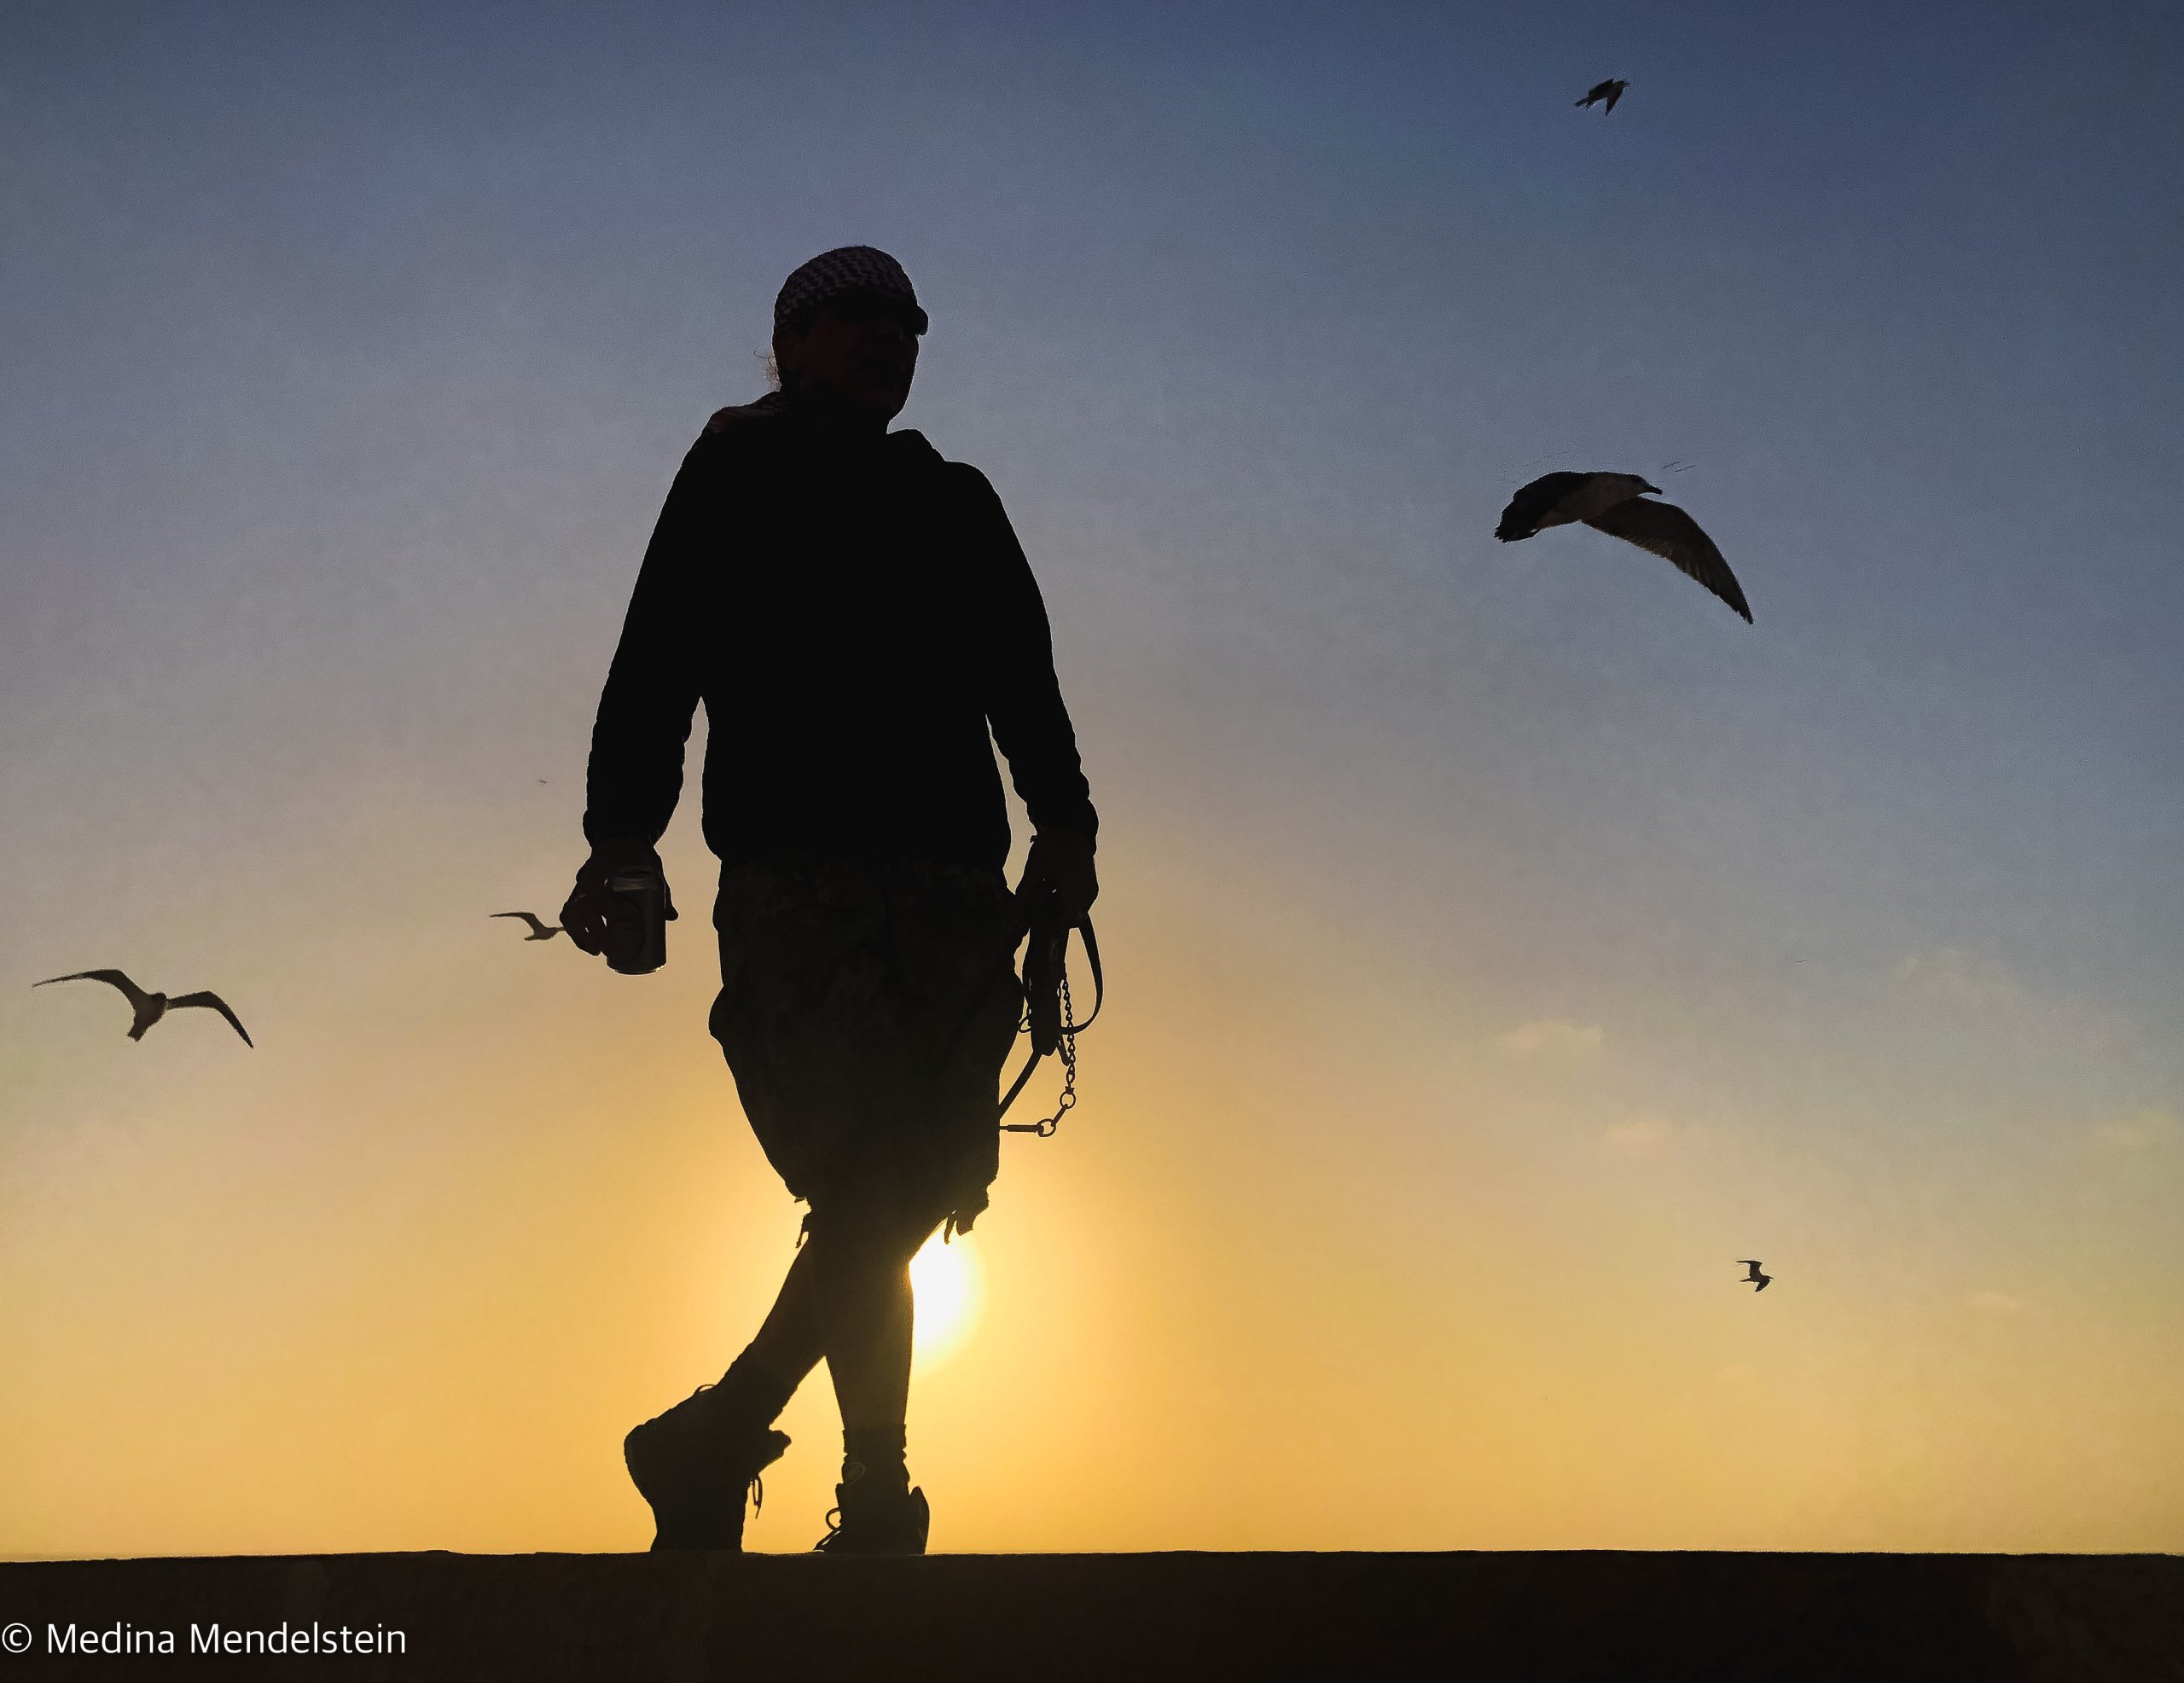 Marokko, Essaouira: Ein Mann tanzt bei Sonnenuntergang auf einer Mauer. Im Hintergrund fliegen Vögel.